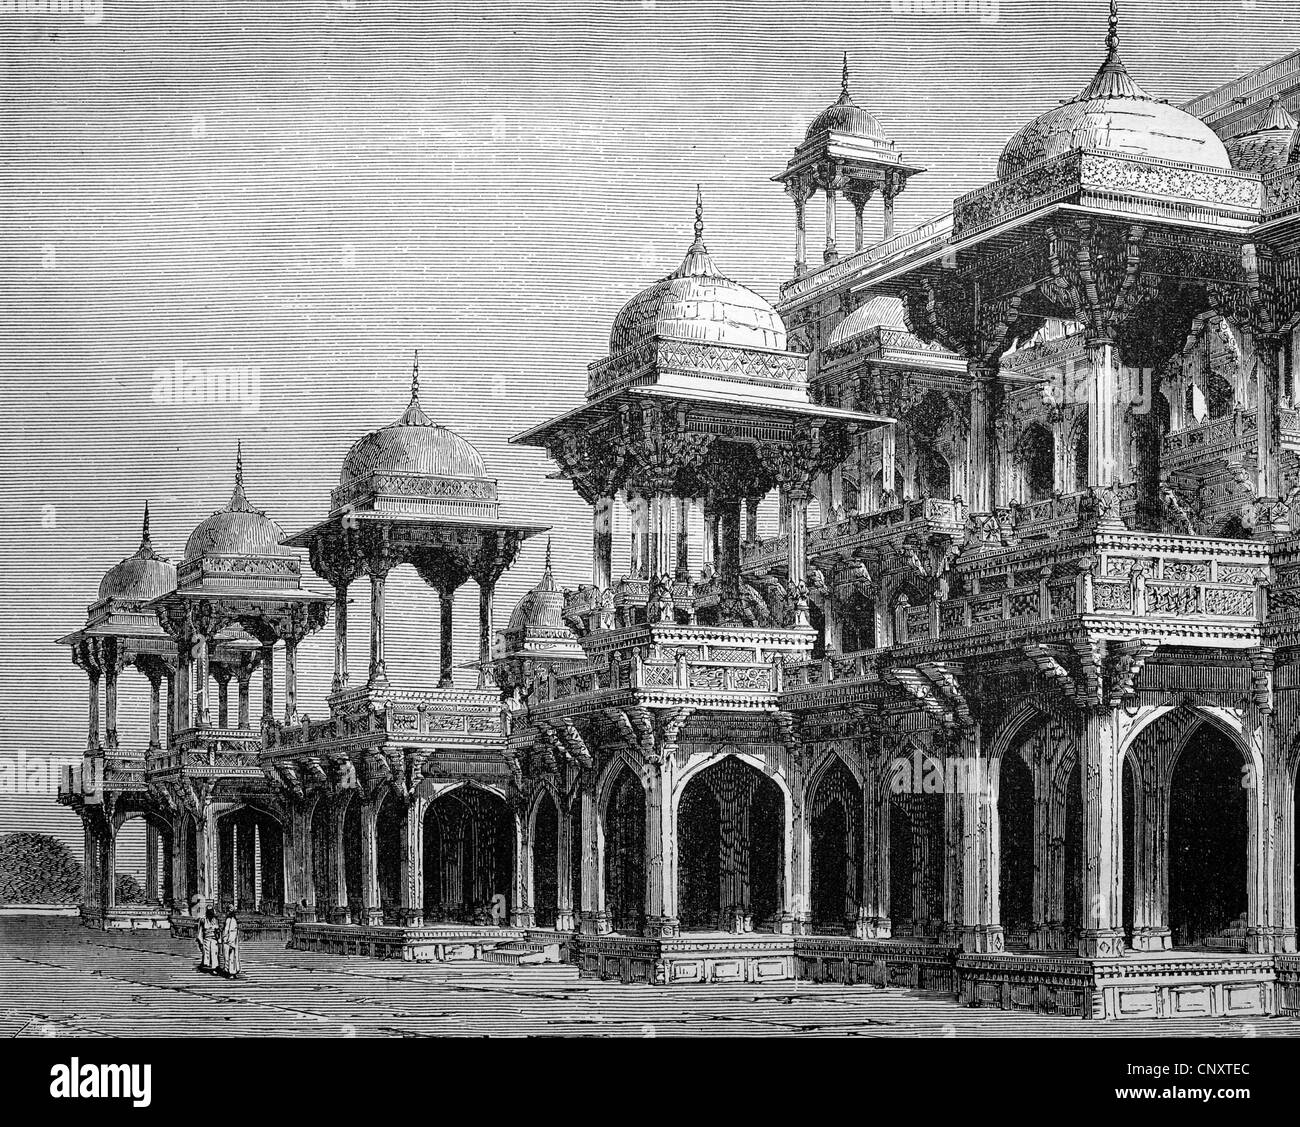 Le mausolée de l'empereur Akbar, Agra, Inde, illustration historique, gravure sur bois, vers 1888 Banque D'Images